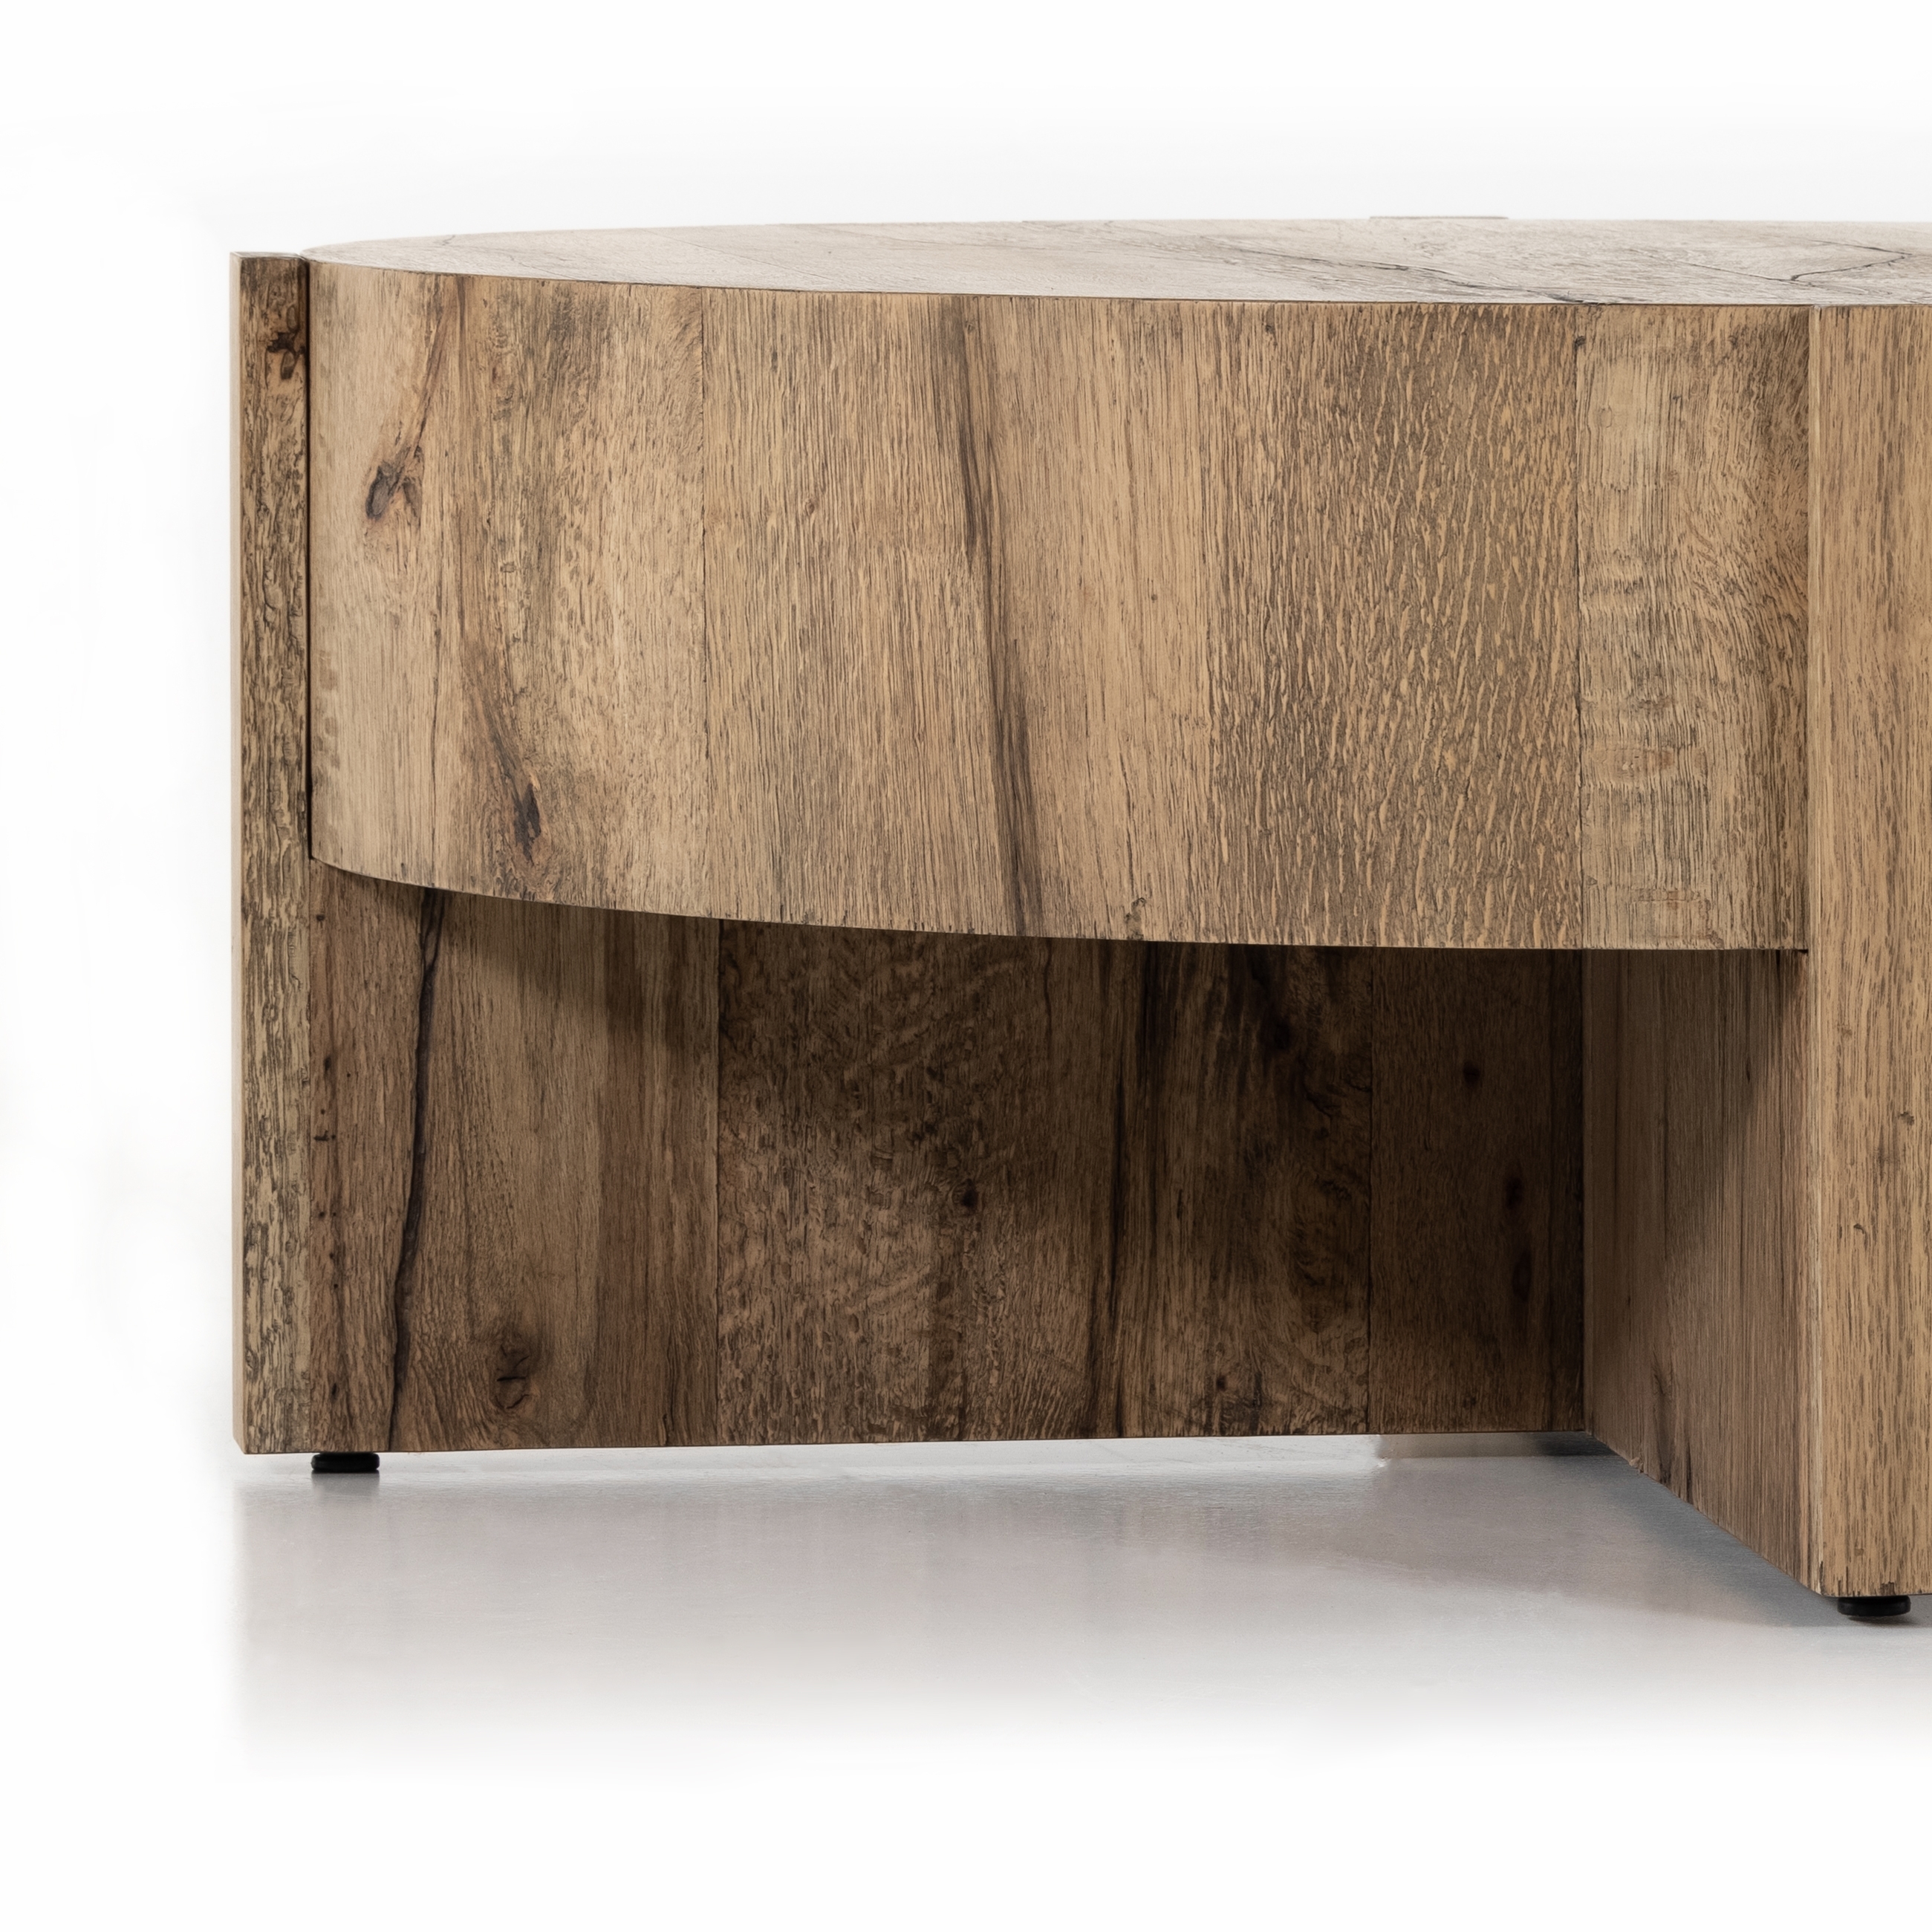 Bingham Coffee Table-Rustic Oak Veneer - Image 2